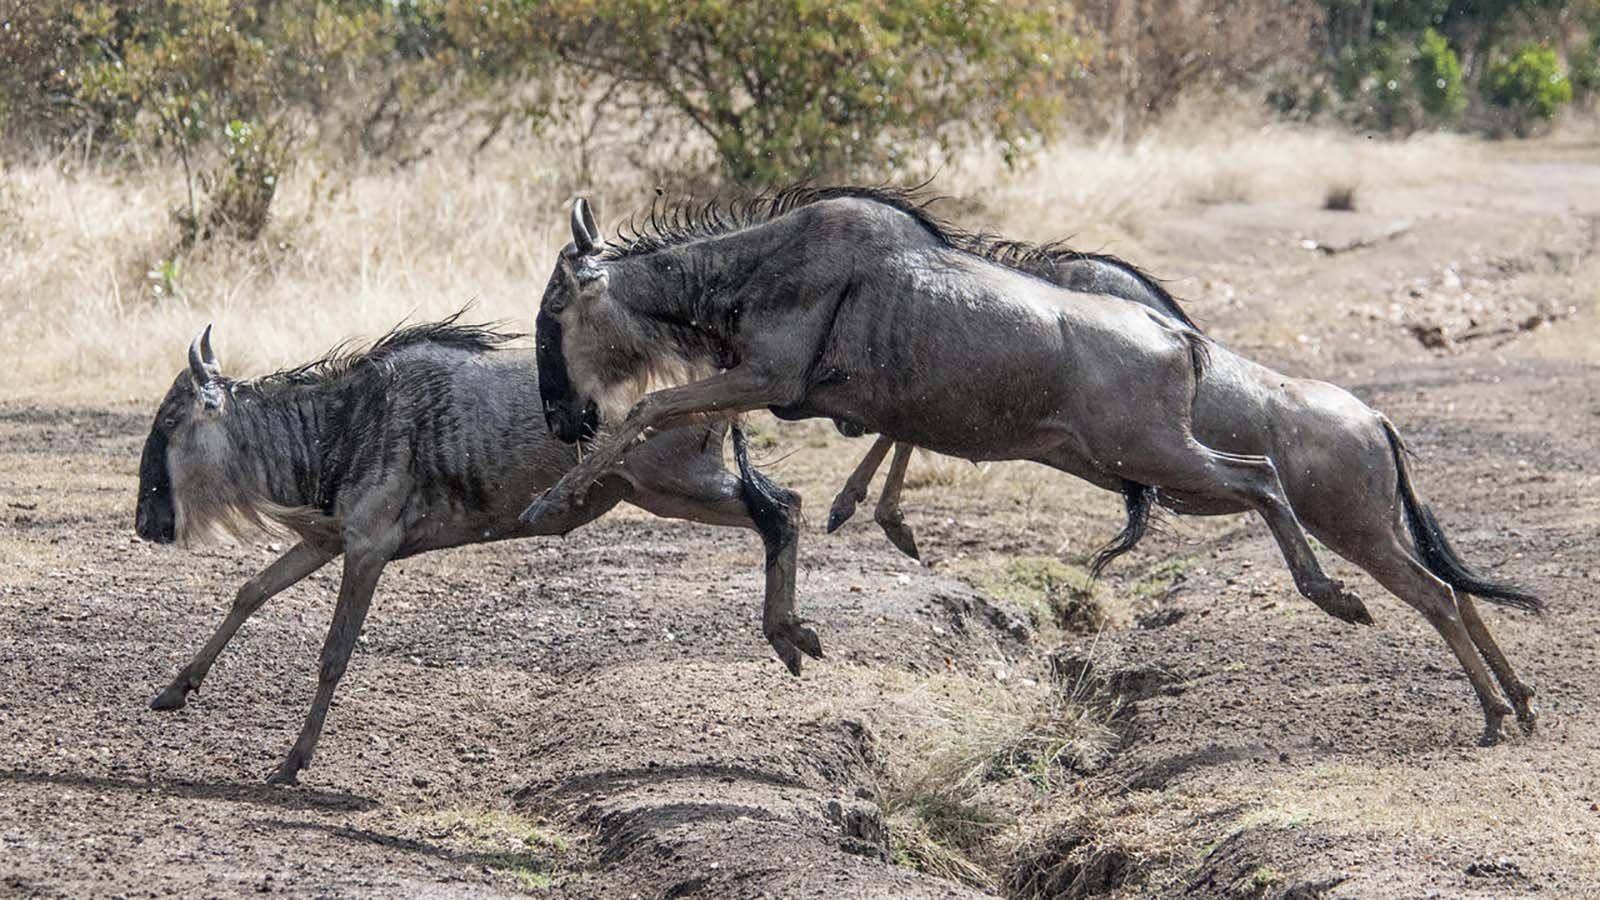 Serengeti National Park Mesmerizing Animal Migration Scenery